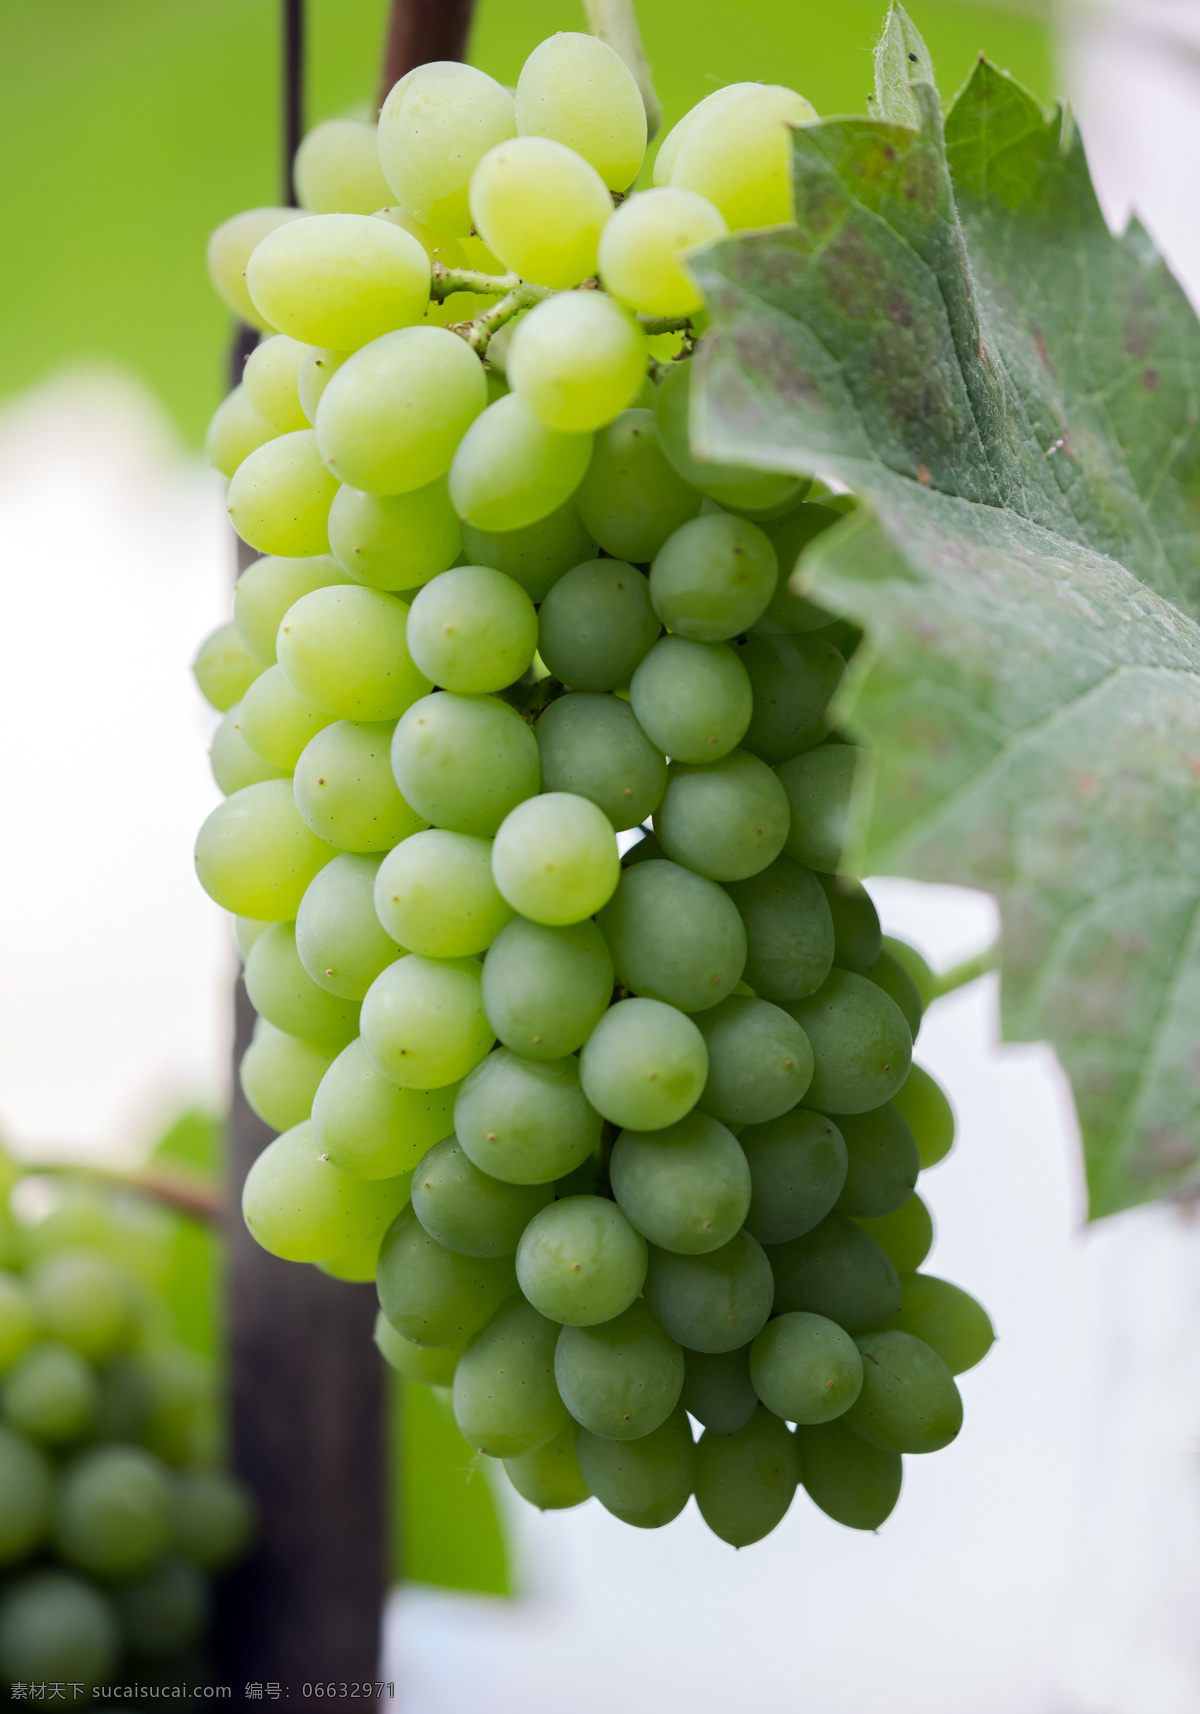 健康 自然 绿色 背景 葡萄酒 百果飘香 生物世界 水果